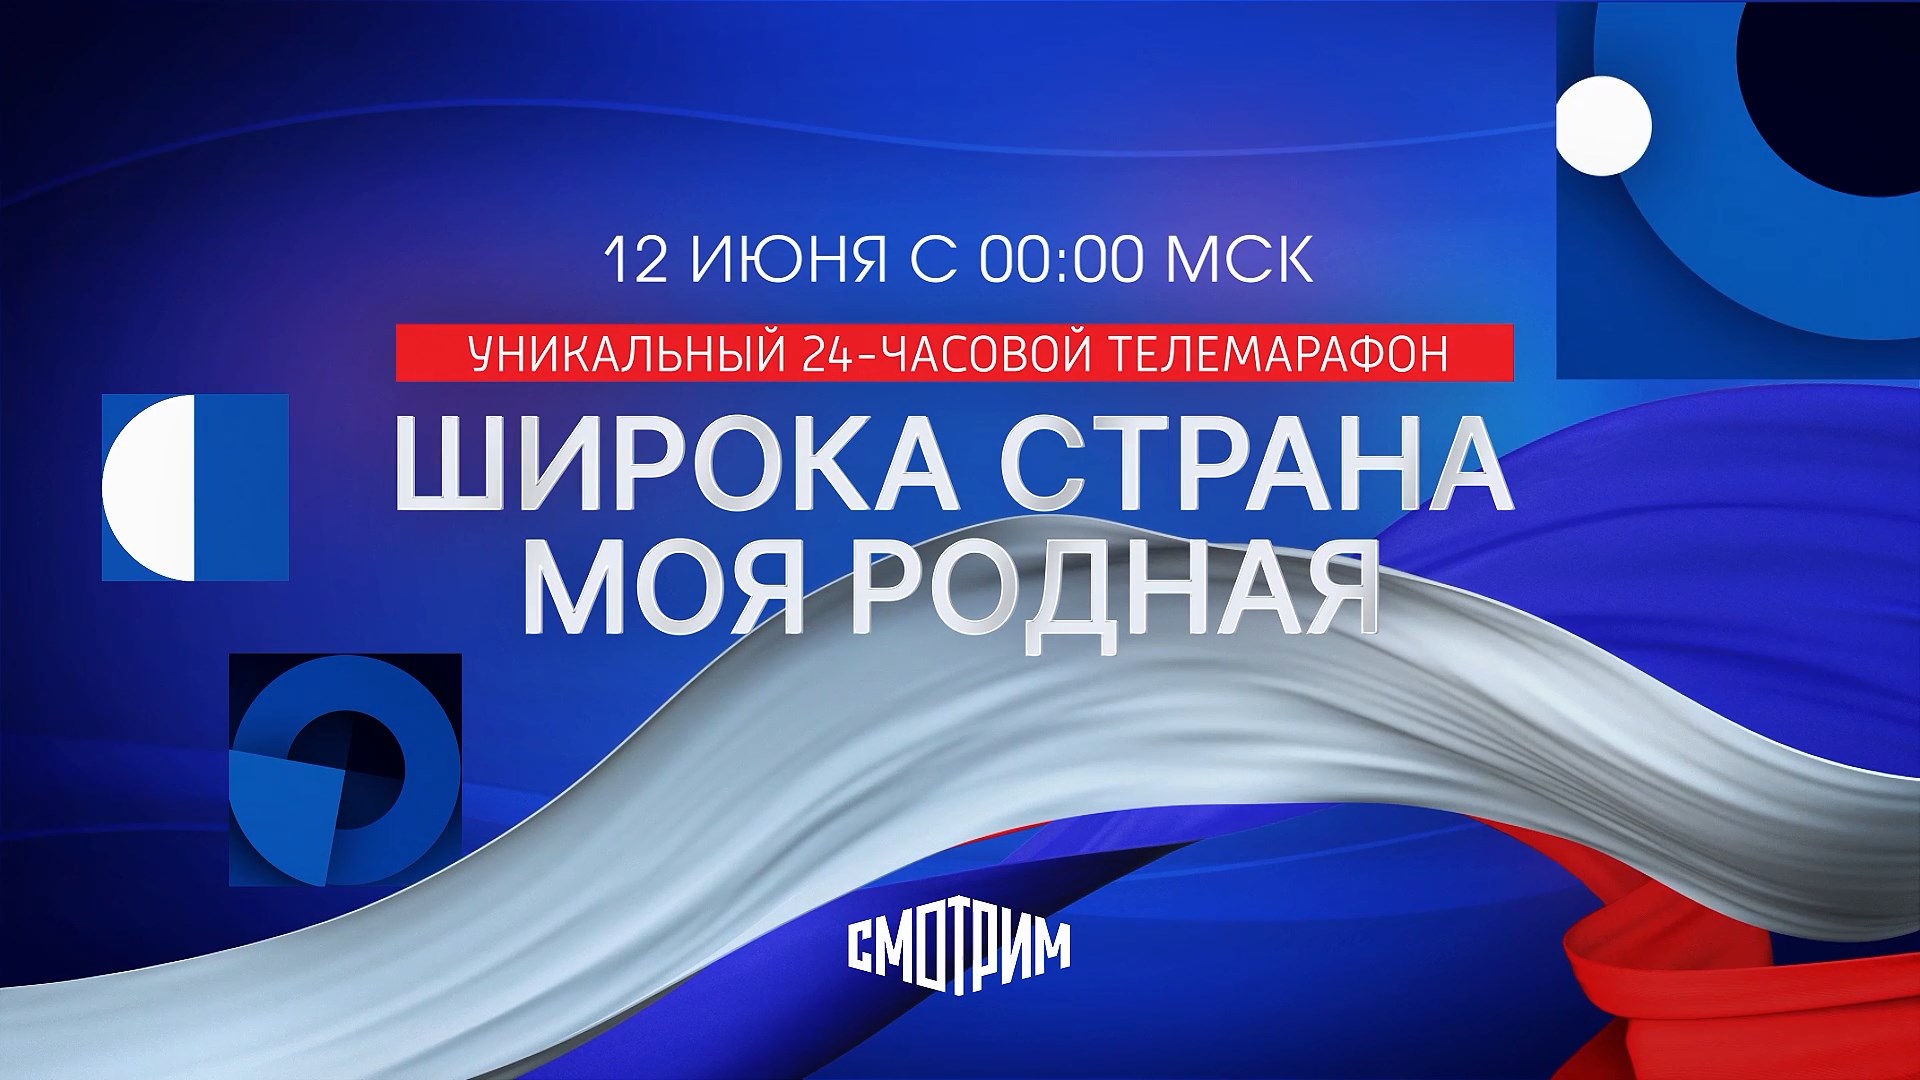 ВГТРК представит большой онлайн-телемарафон ко Дню России